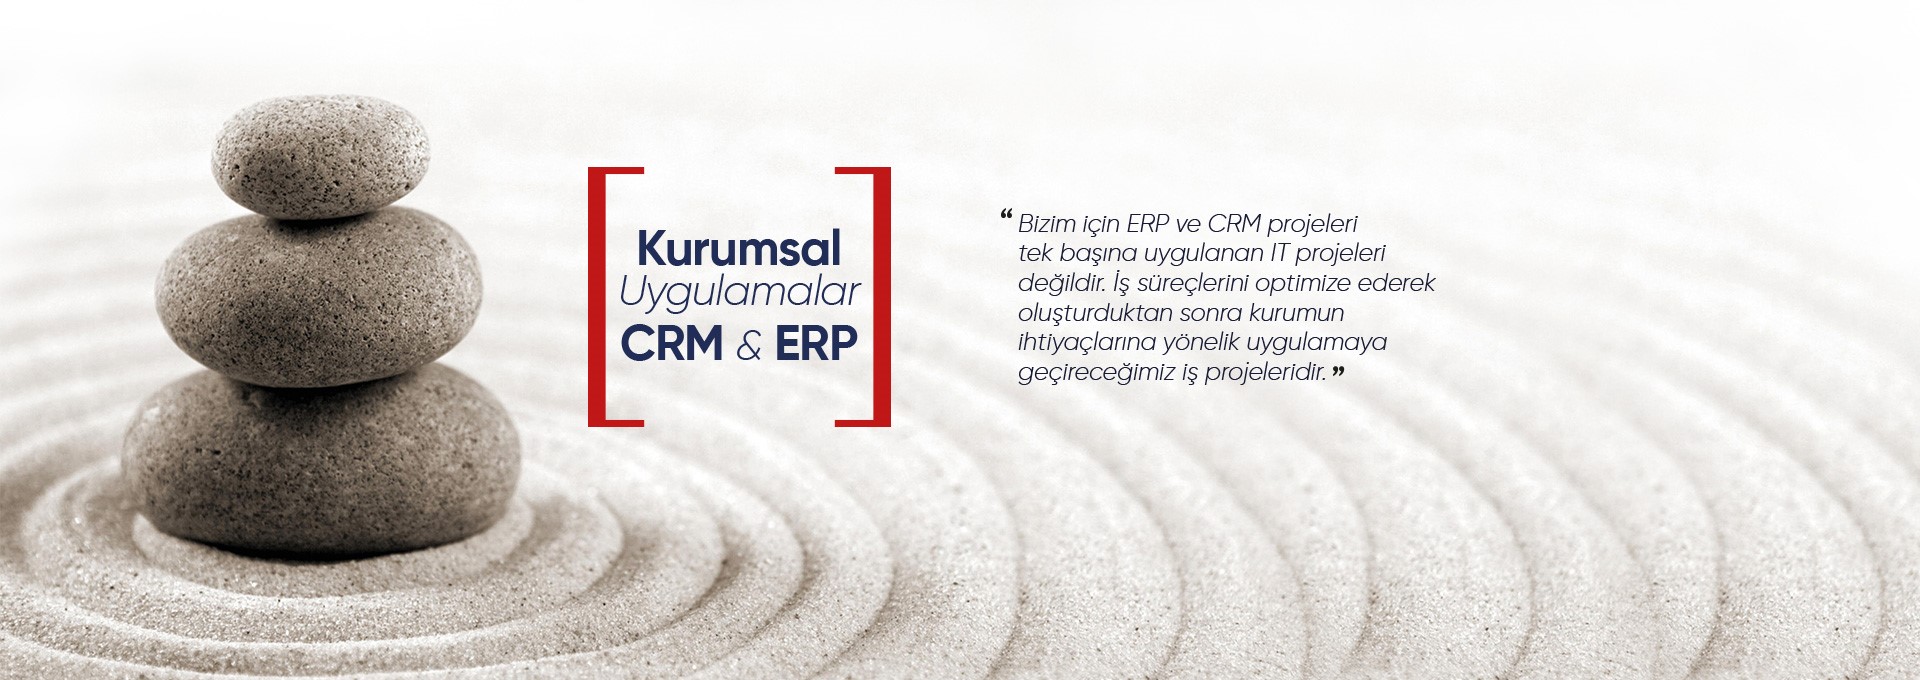 CRM - ERP